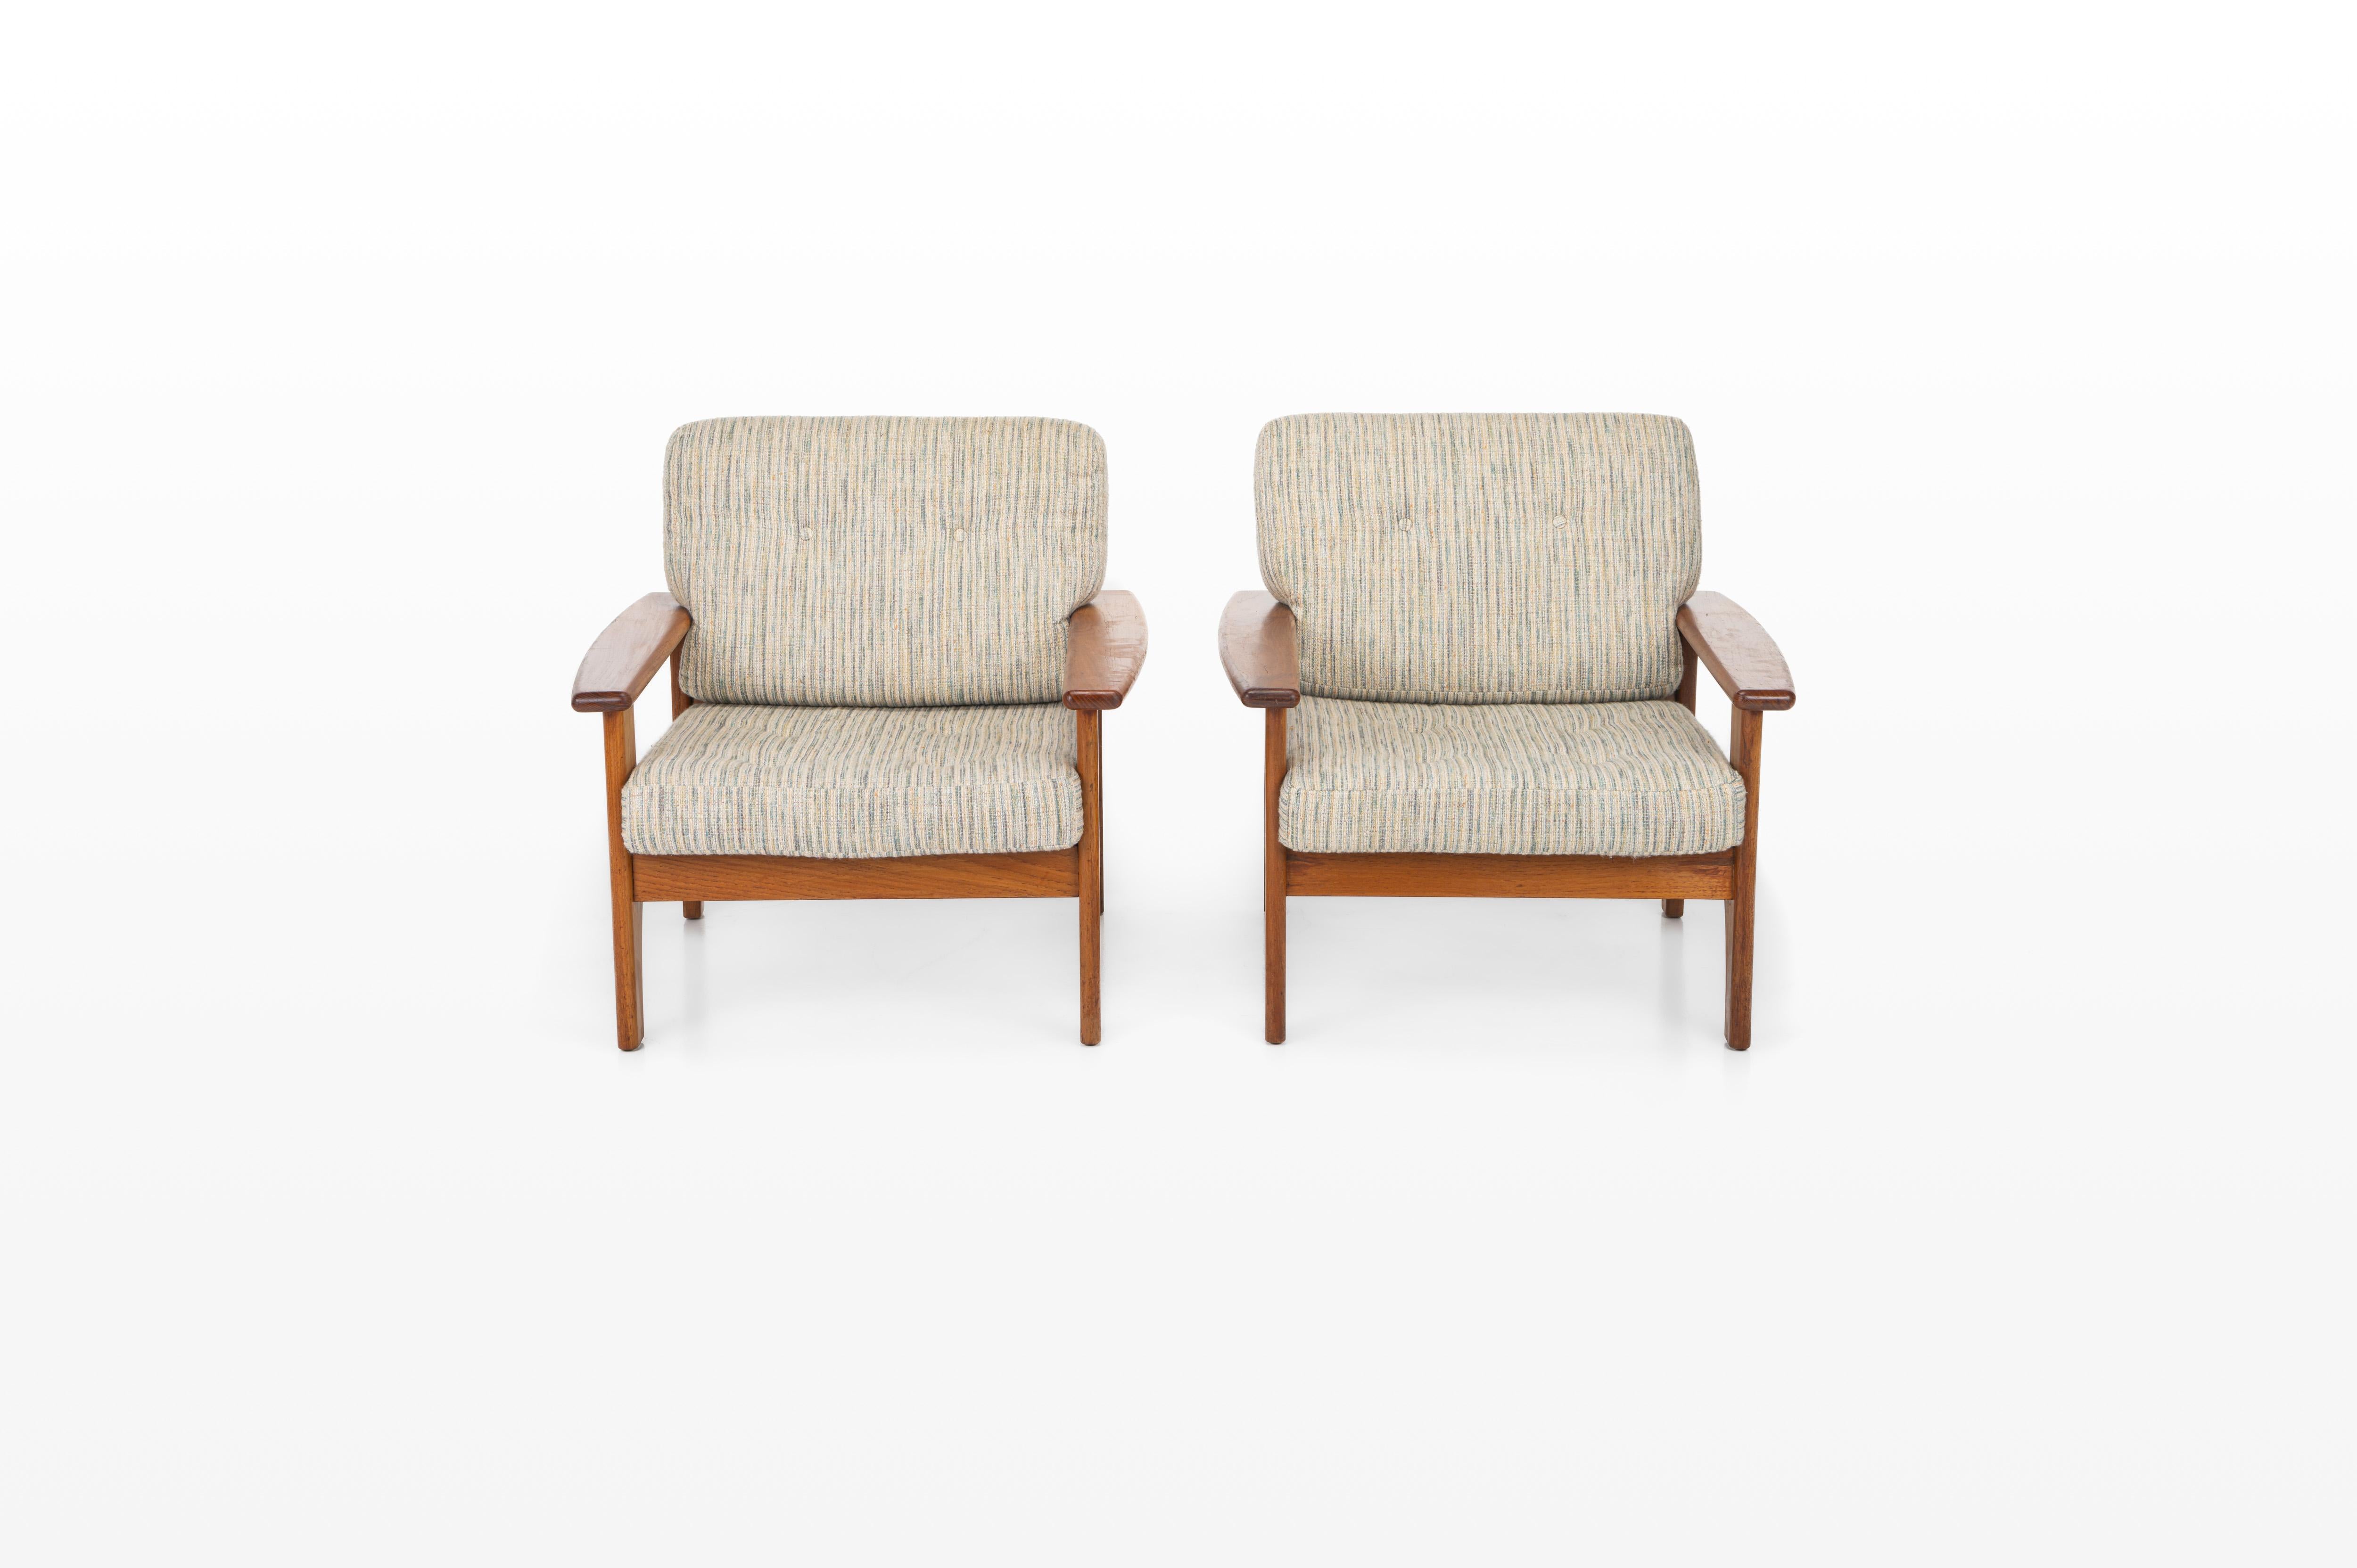 Schönes Set aus zwei Vintage-Loungesesseln. Diese Sessel wurden in den 1960er Jahren in Dänemark hergestellt. Sie haben einen Rahmen aus Teakholz und weiß-blauen Stoff. Wir haben auch das passende Sofa im Angebot.

Abmessungen:
B: 80 cm
T: 80 cm
H: